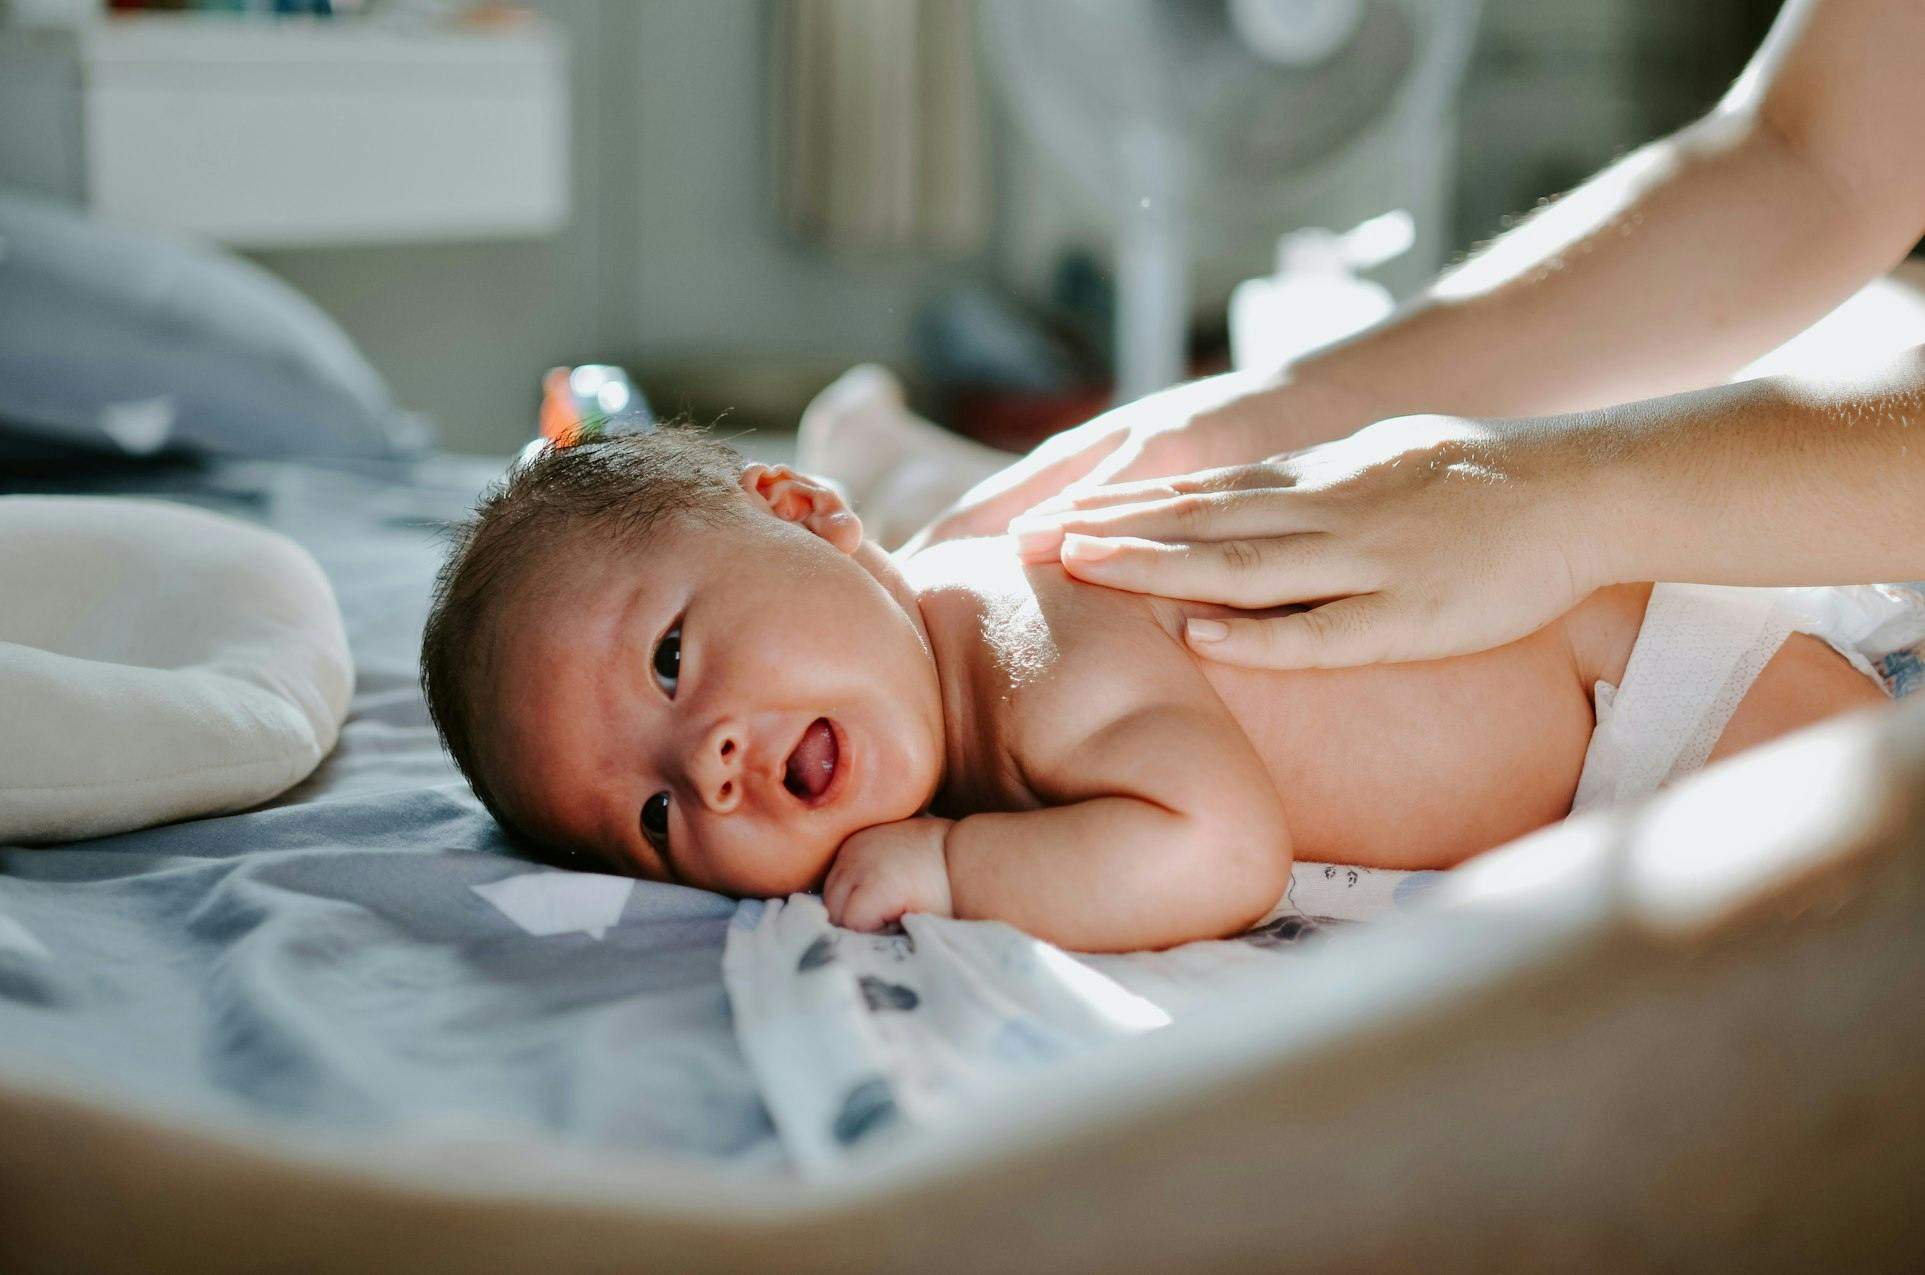 Un nourrisson est allongé sur le côté, regardant attentivement l'appareil photo. Les mains bienveillantes d'un adulte reposent doucement sur le dos du bébé, communiquant tendresse et soin. La lumière naturelle filtre à travers une fenêtre, illuminant la scène d'une douce lumière dorée qui accentue la douceur de l'instant.